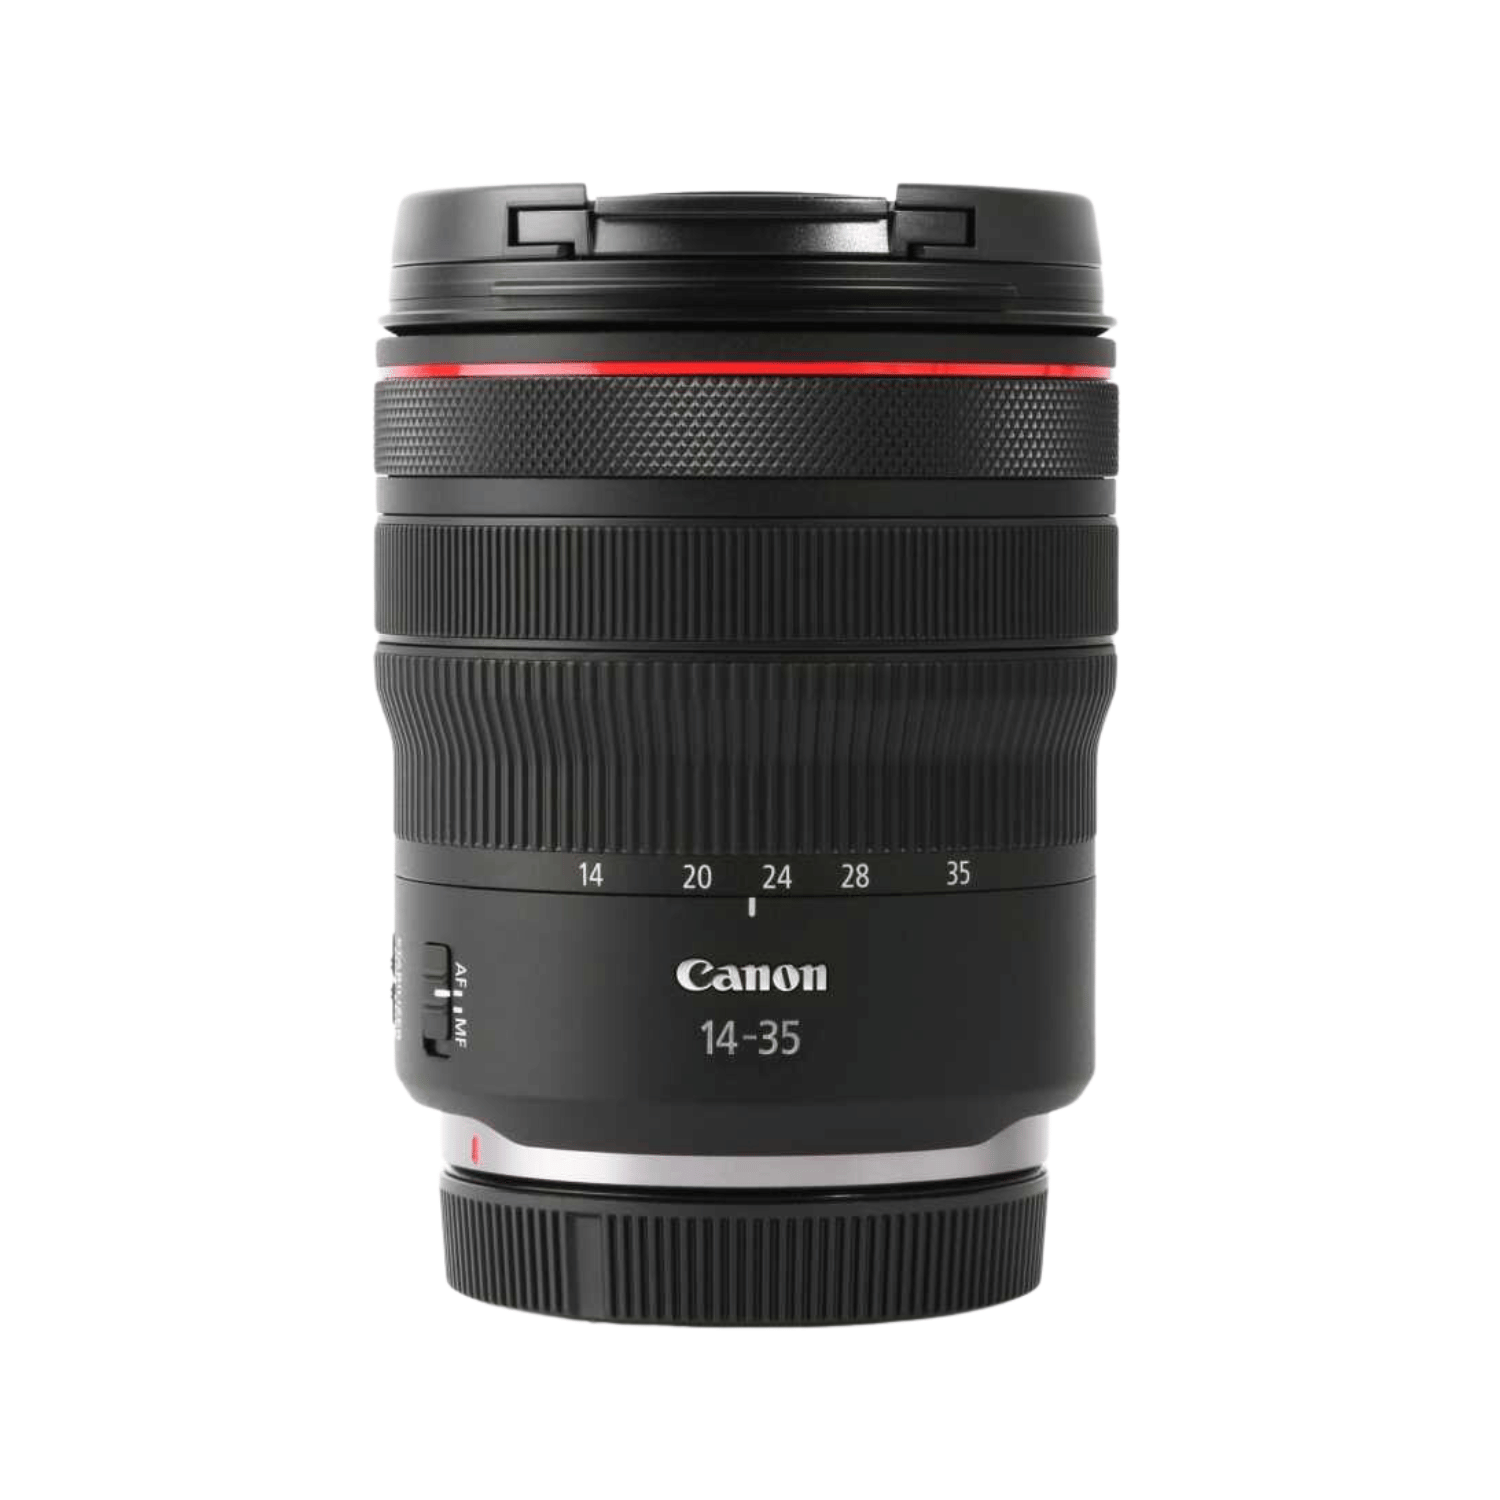 CANON RF 14-35mm F4 L IS USM - Garanzia Canon Italia - Cine Sud è da 46 anni sul mercato!4857C005